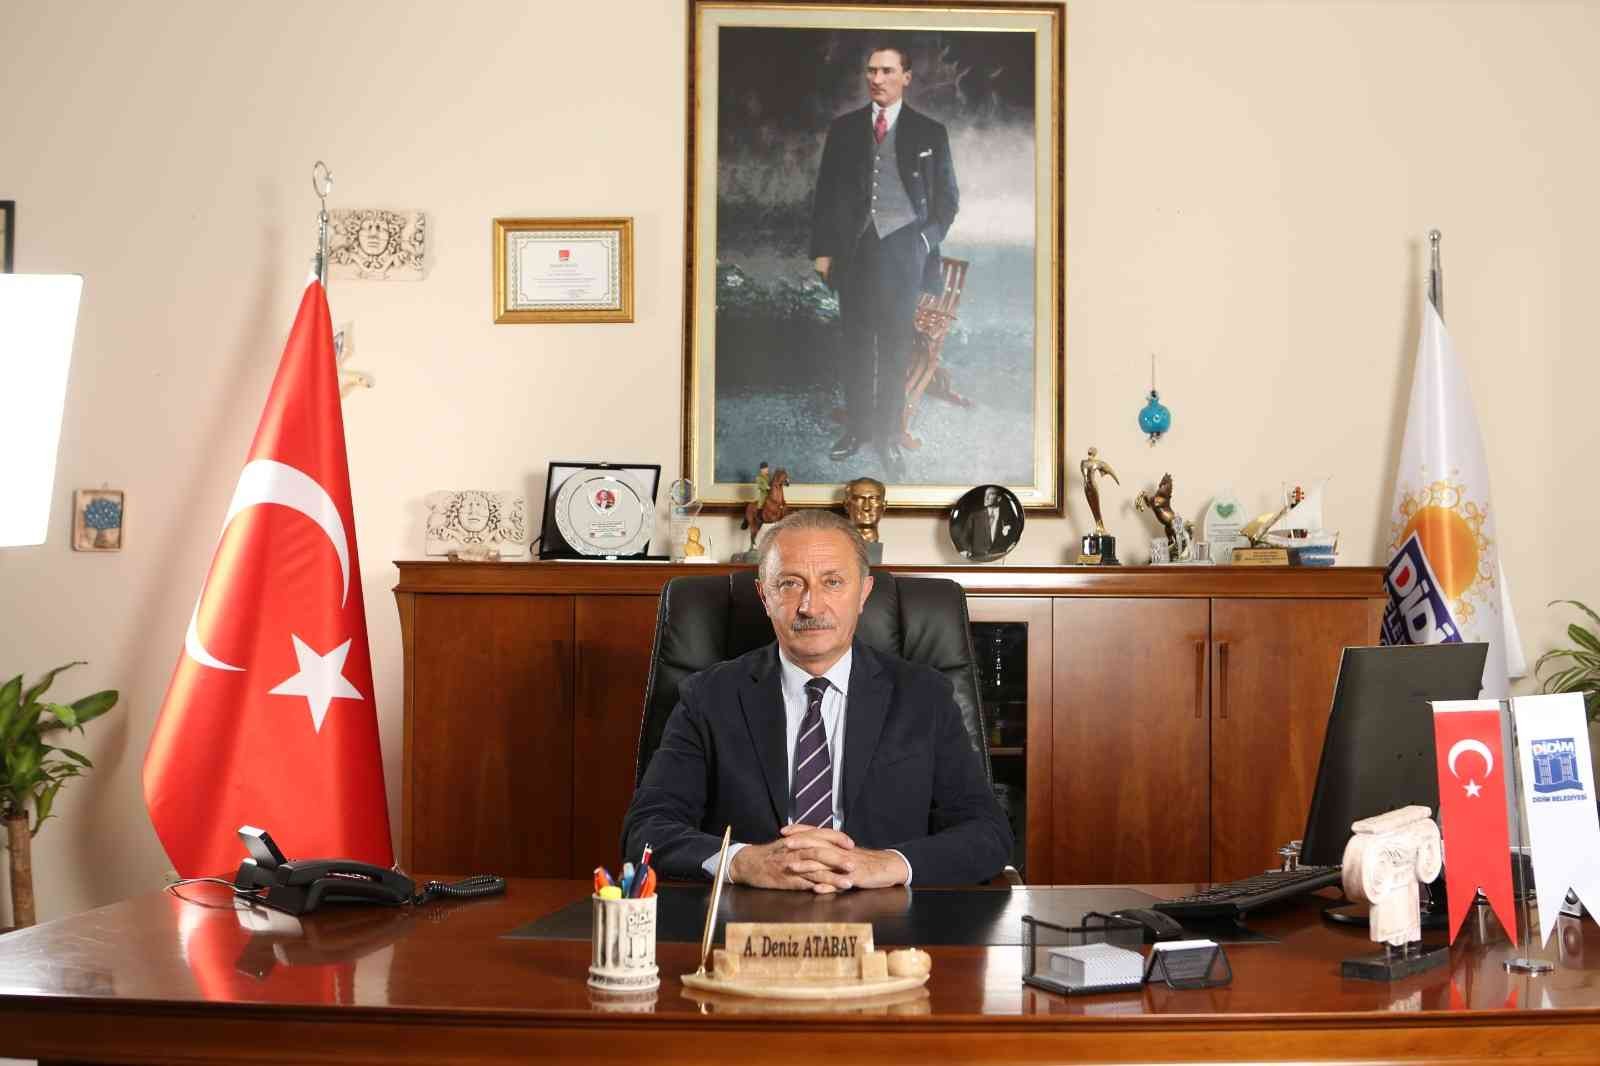 Başkan Atabay, Atatürk Anıtı’na gerçekleştirilen saldırıyı kınadı #aydin